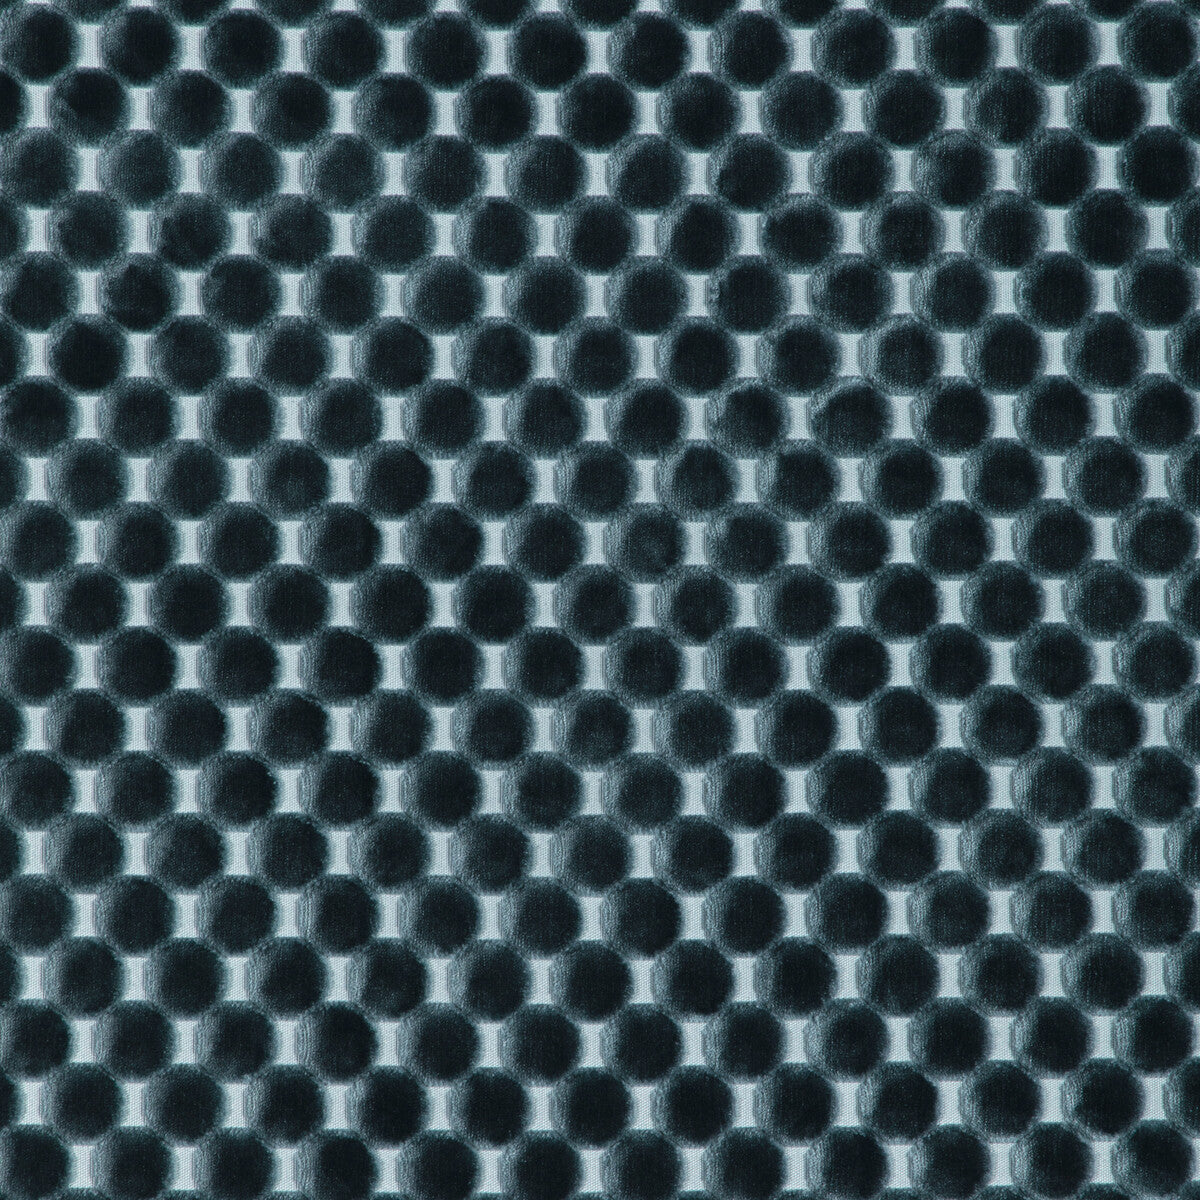 Kravet Design fabric in 37165-5 color - pattern 37165.5.0 - by Kravet Design